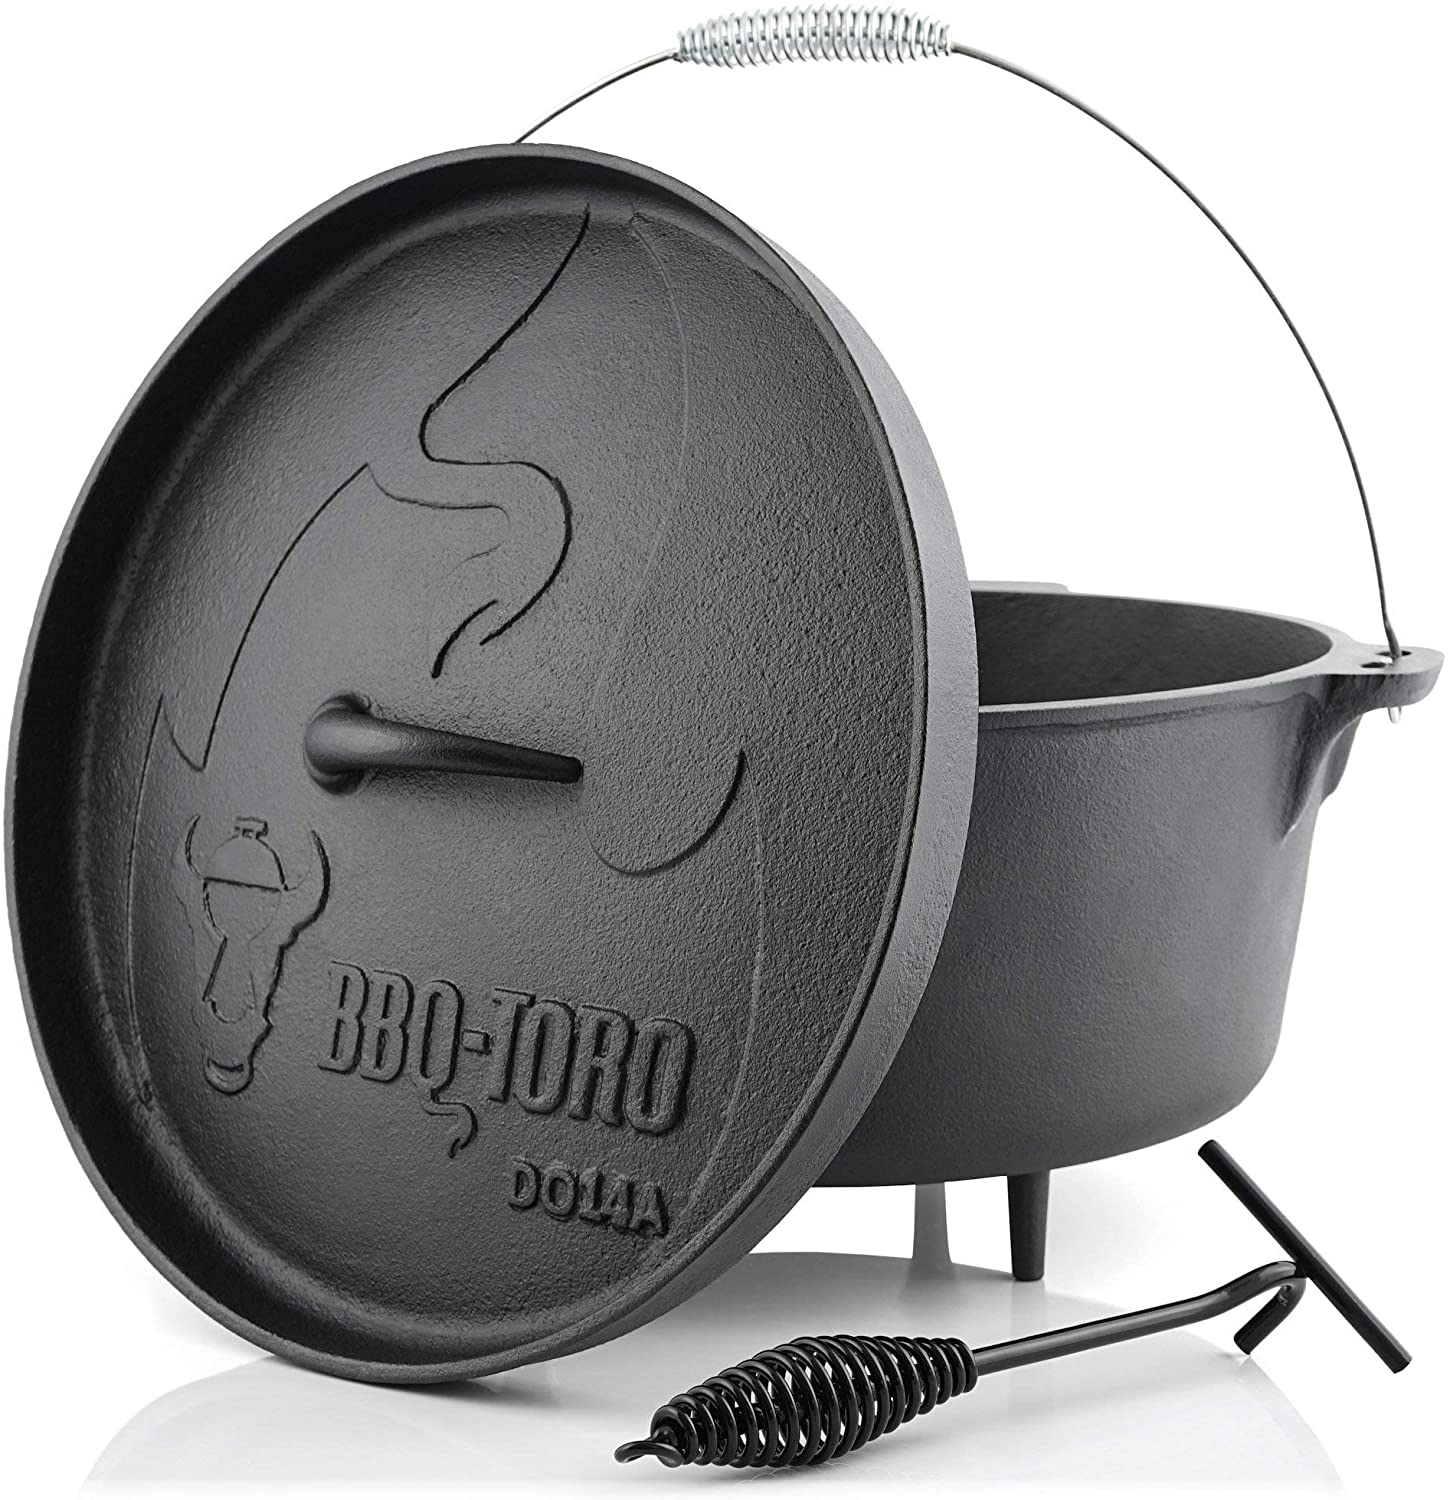 BBQ-Toro Dutch Oven, litinový hrnec pro outdoor, grilování a oheň, 13,3l